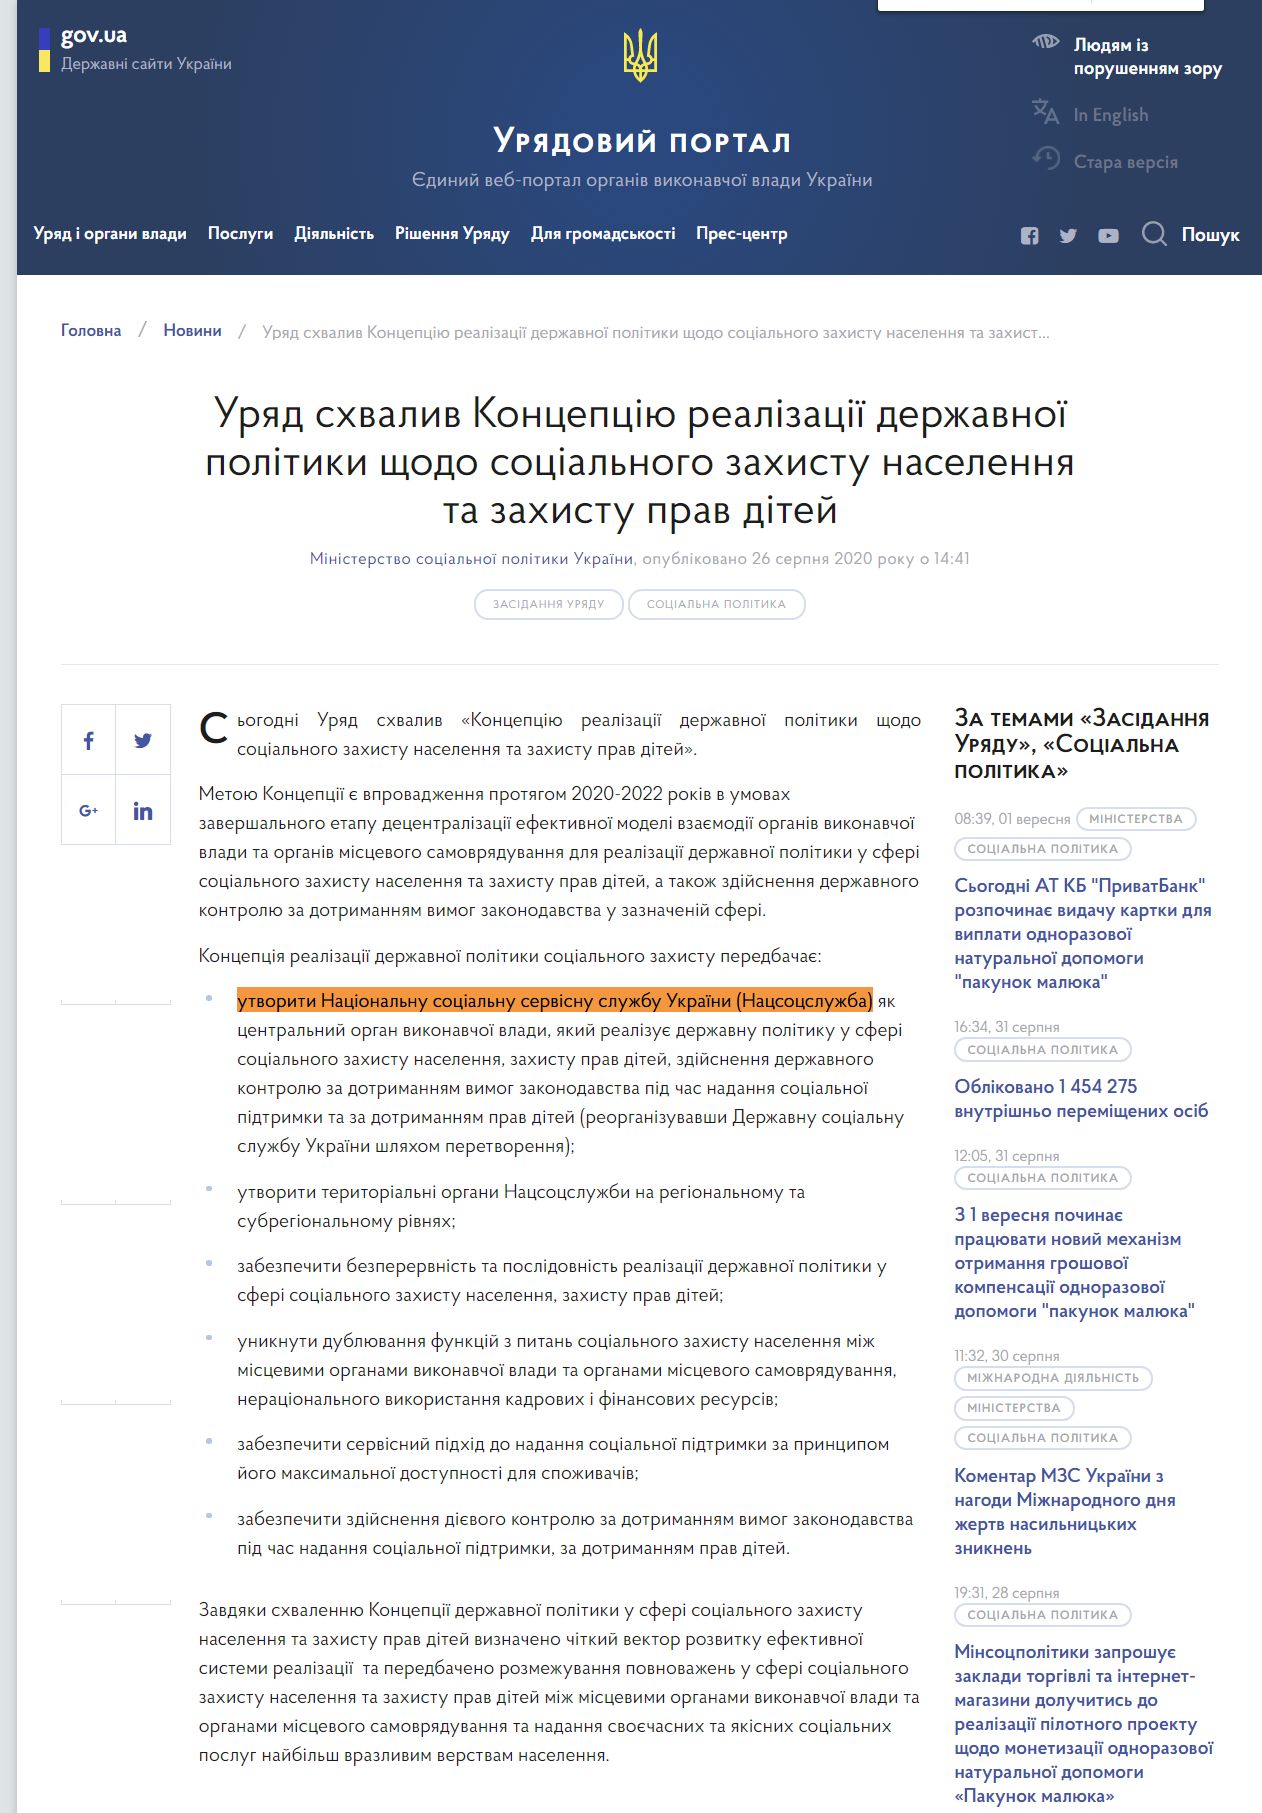 https://www.kmu.gov.ua/news/uryad-shvaliv-koncepciyu-realizaciyi-derzhavnoyi-politiki-shchodo-socialnogo-zahistu-naselennya-ta-zahistu-prav-ditej